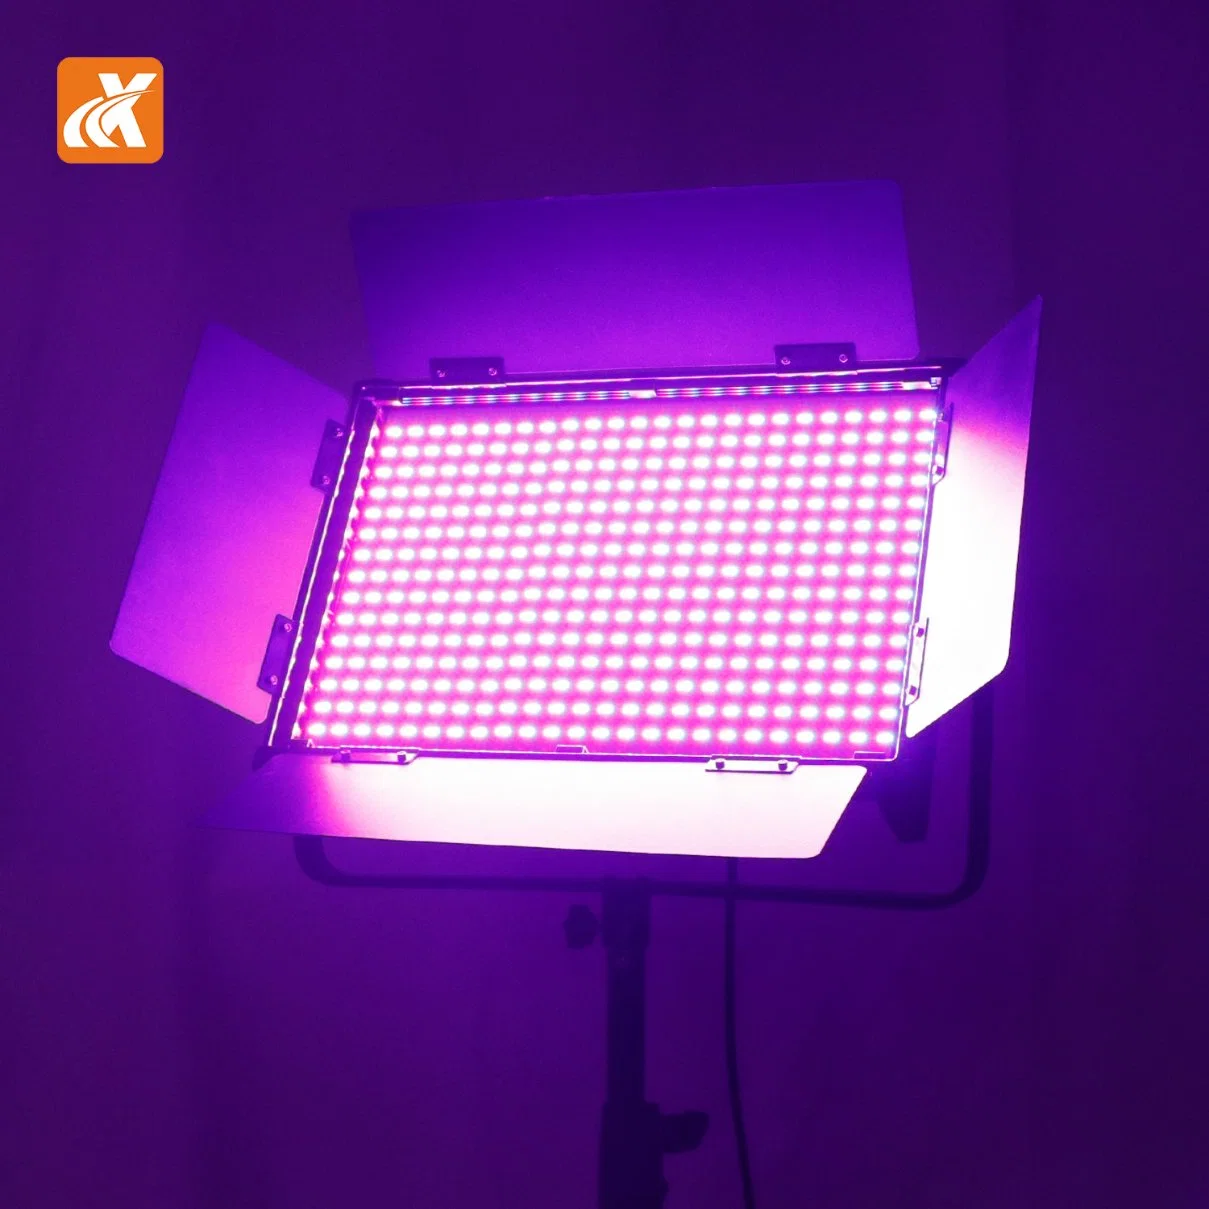 Model LED-RGB300 LED Panel Light 300W Power Aluminum Alloy Material Factory Best Soft Light for Video